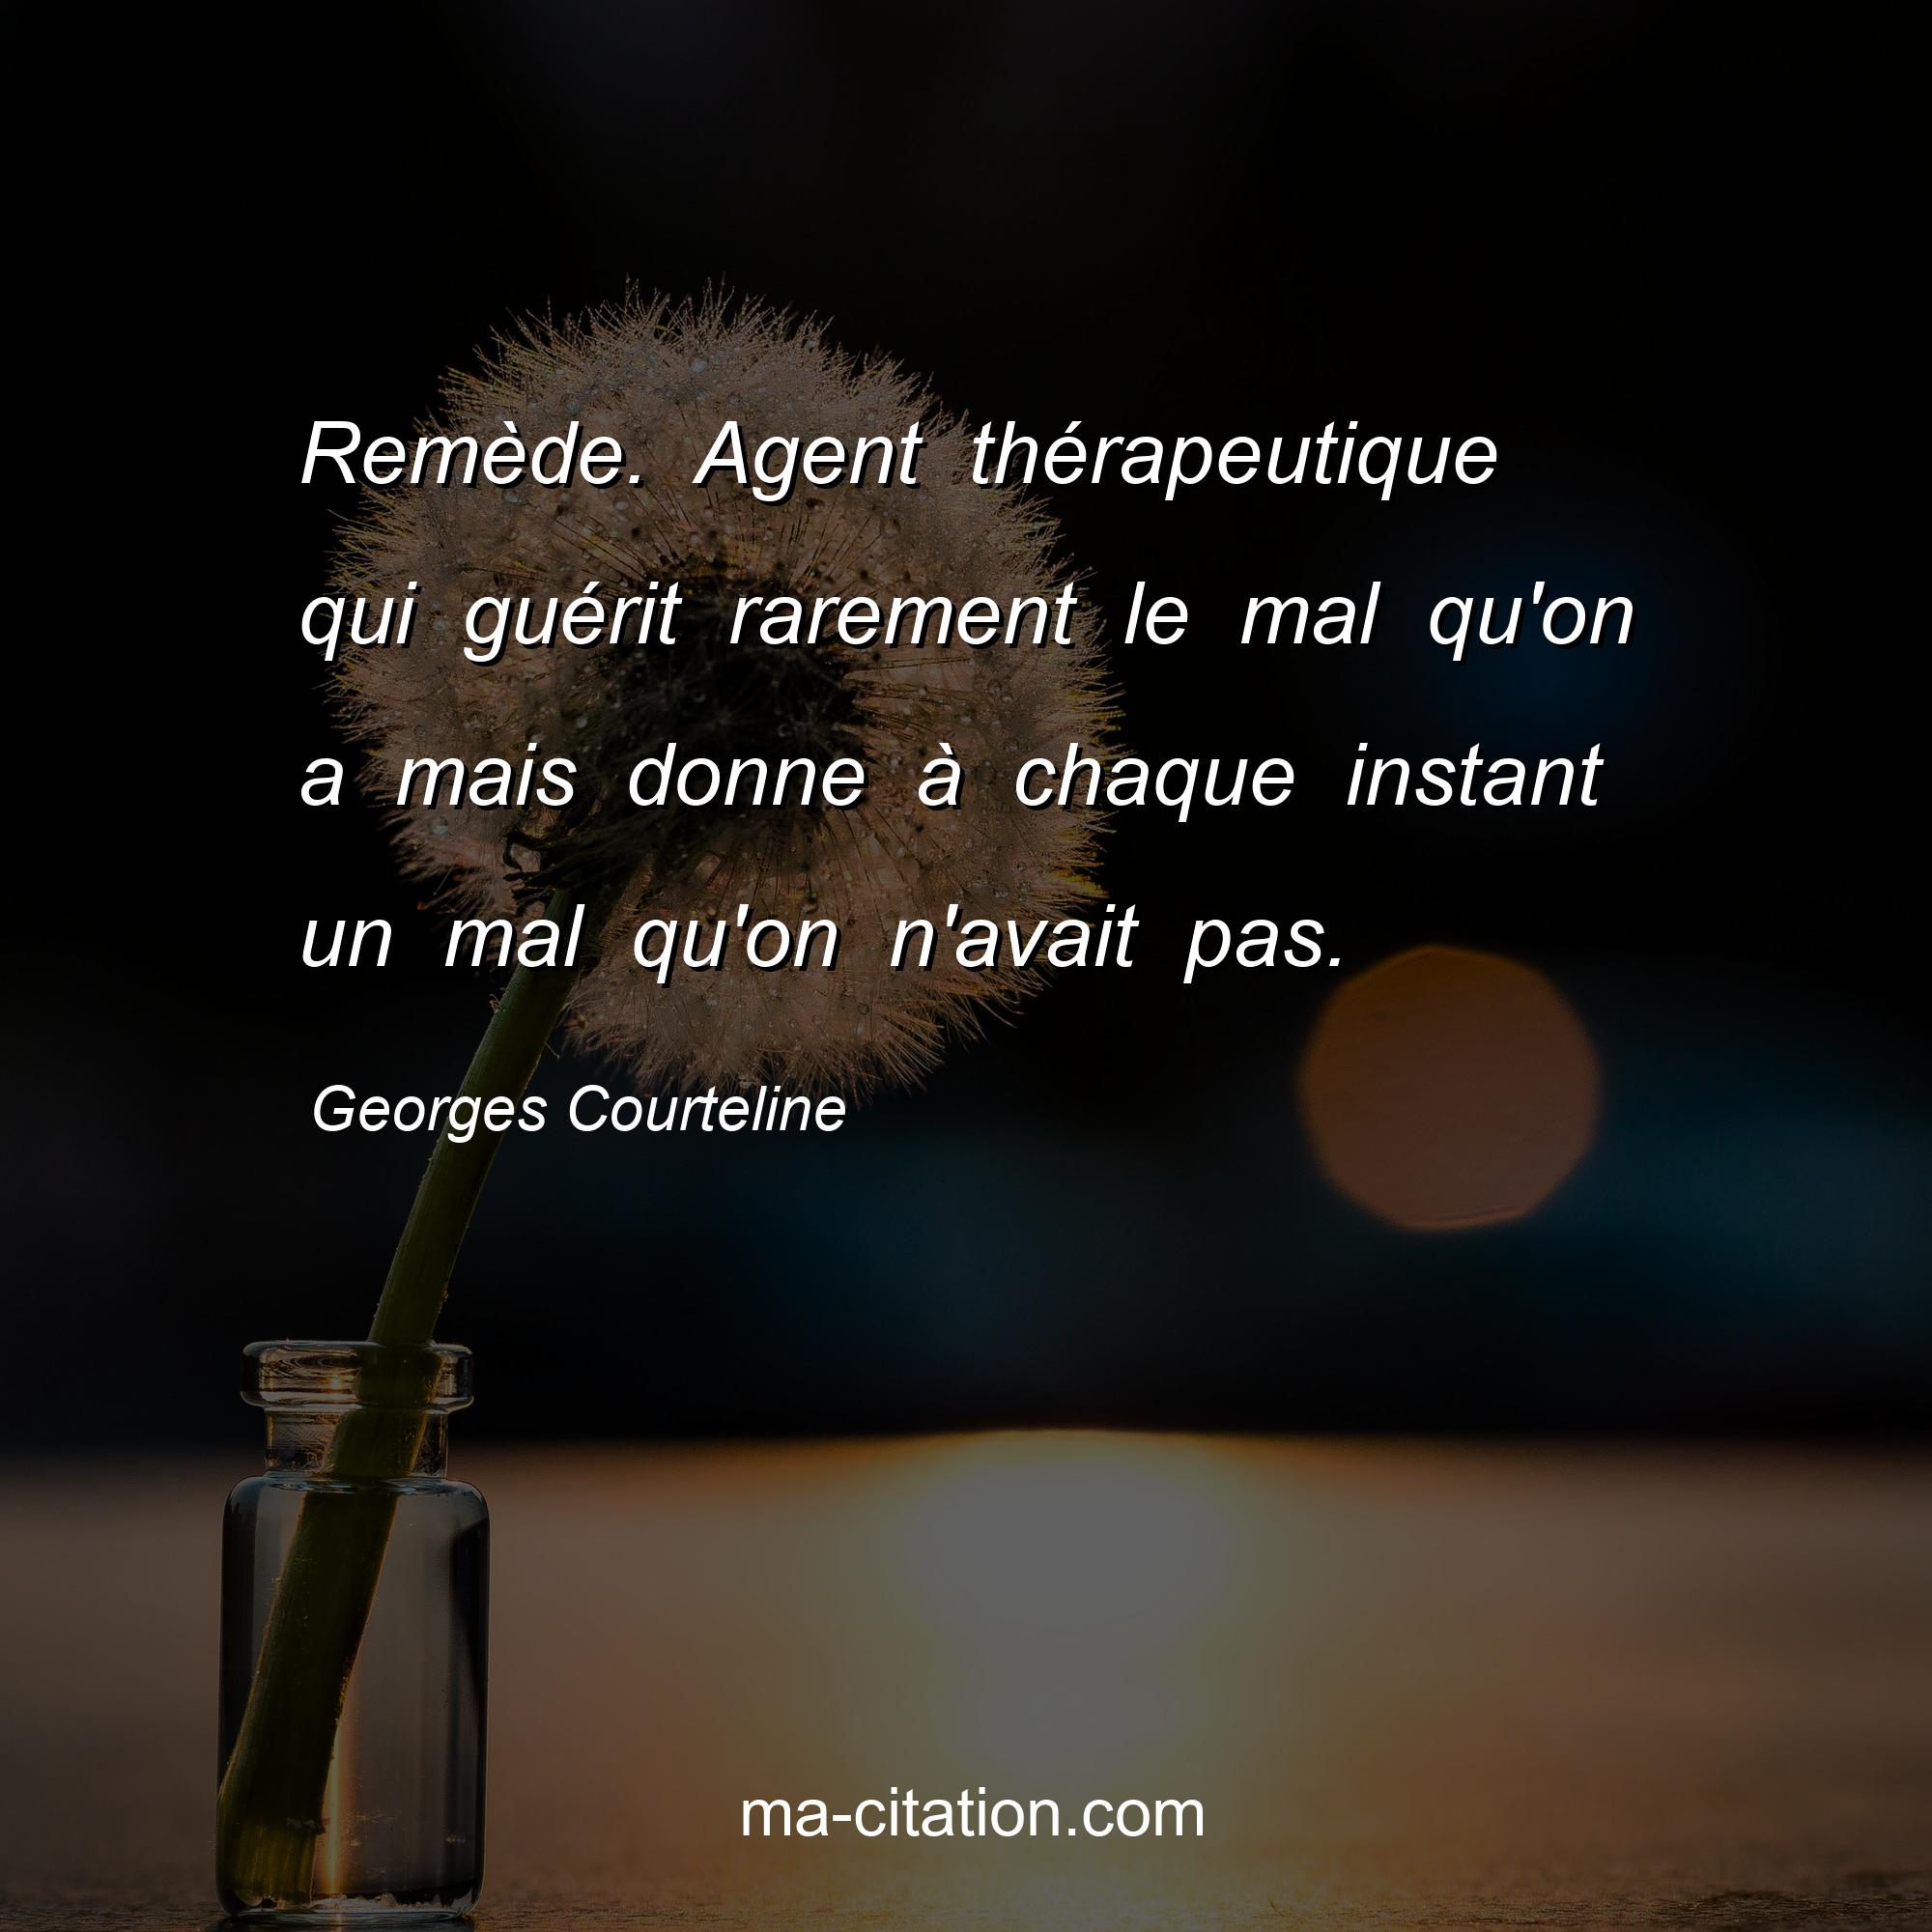 Georges Courteline : Remède. Agent thérapeutique qui guérit rarement le mal qu'on a mais donne à chaque instant un mal qu'on n'avait pas.